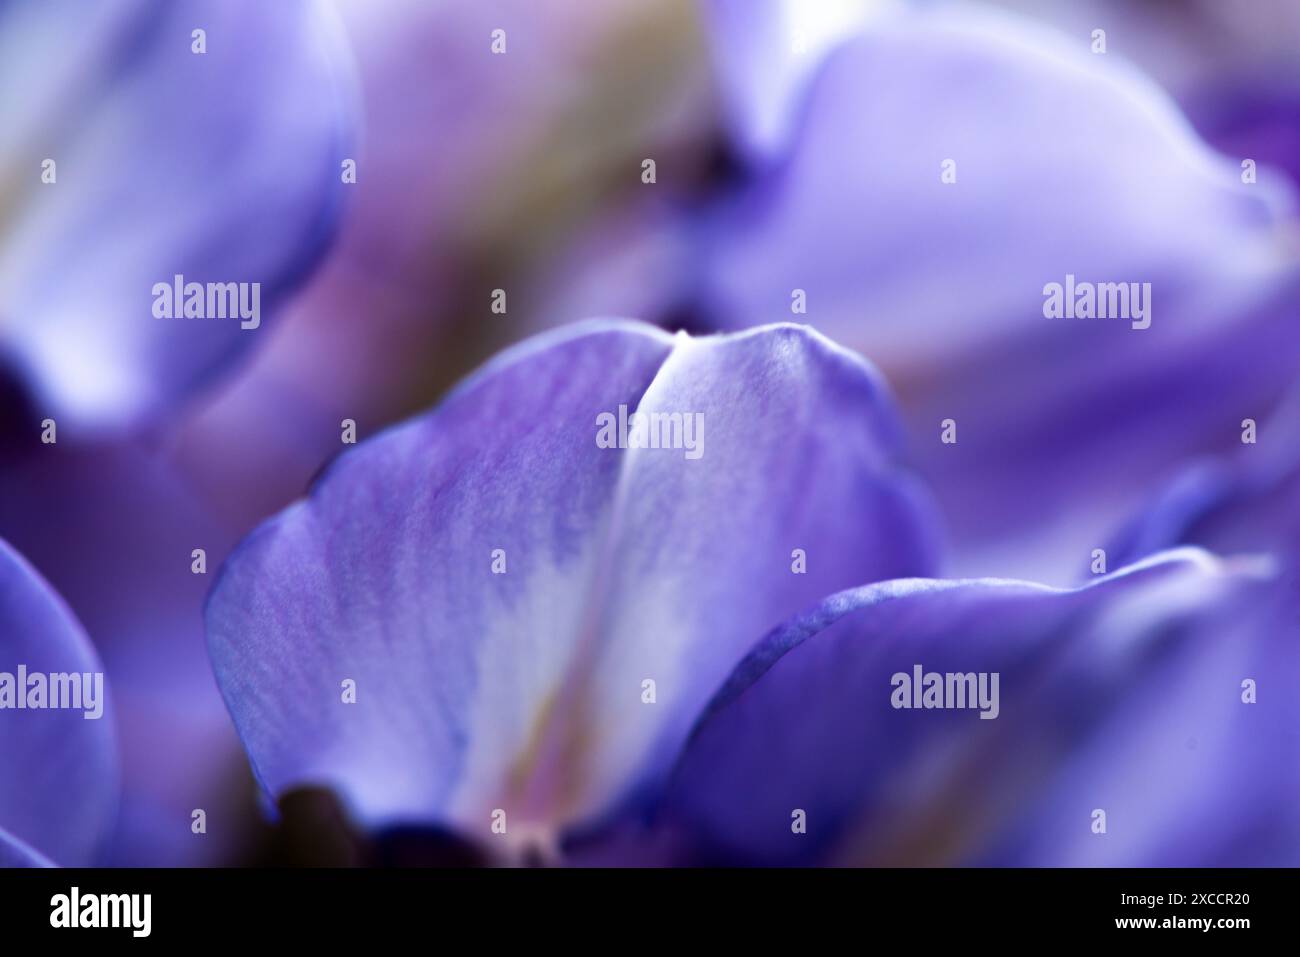 Foto ravvicinata dei fiori di Wisteria sinensis, che catturano i dettagli intricati e i vibranti fiori viola in una splendida mostra botanica. Foto Stock